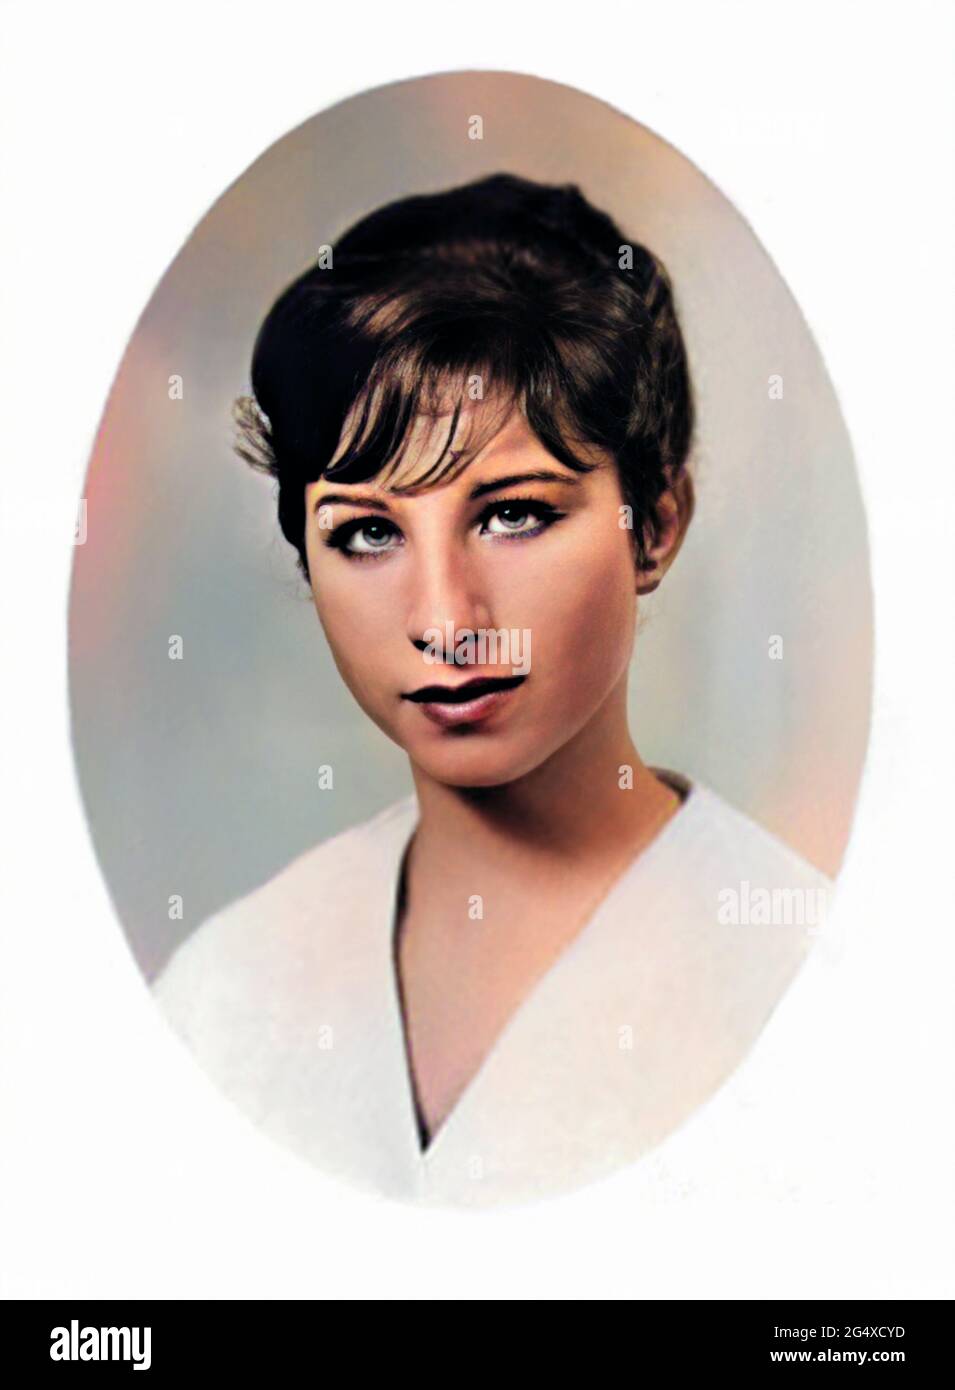 1959 c., USA : la celebre cantante americana BARBRA STREISAND ( nata nel 1942 ) quando era una giovane ragazza di 17 anni del suo Annuario della High School . Fotografo sconosciuto. COLORIZZATO DIGITALMENTE . - STORIA - FOTO STORICHE - personalità da giovane giovani - ragazza - personalità personalità quando era giovane - INFANTA - INFANZIA - musica pop - MUSICA - cantante --- ARCHIVIO GBB Foto Stock